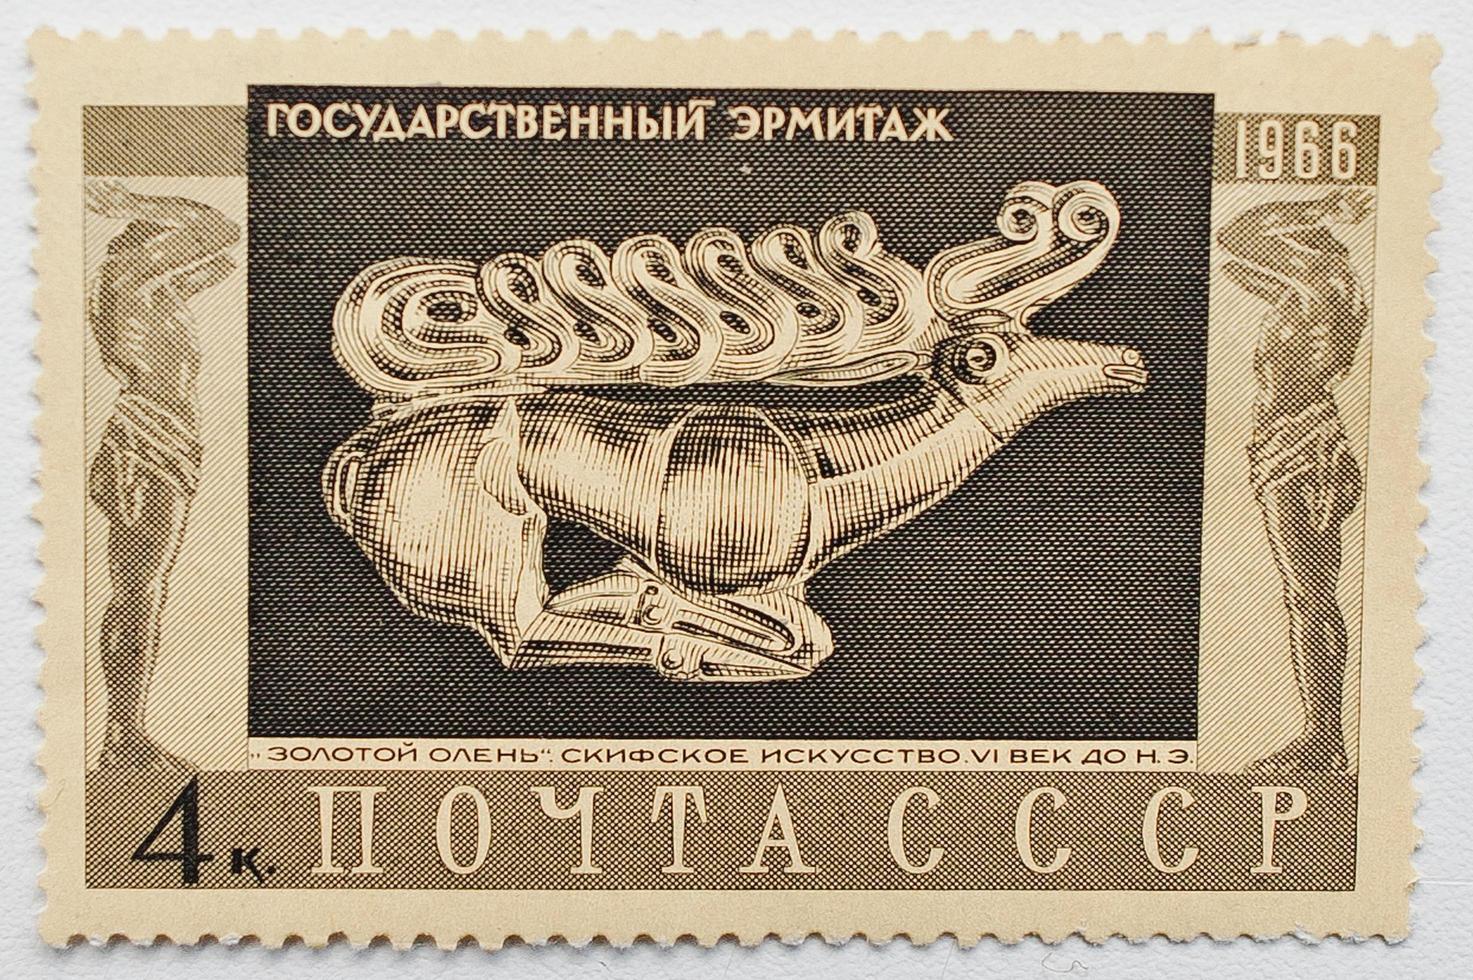 frimärke tryckt i ussr som visar skytisk guldprydnad av en rinnande hjort på eremitagemuseet 500-talet f.Kr., Ryssland, st. Petersburg, cirka 1966 foto